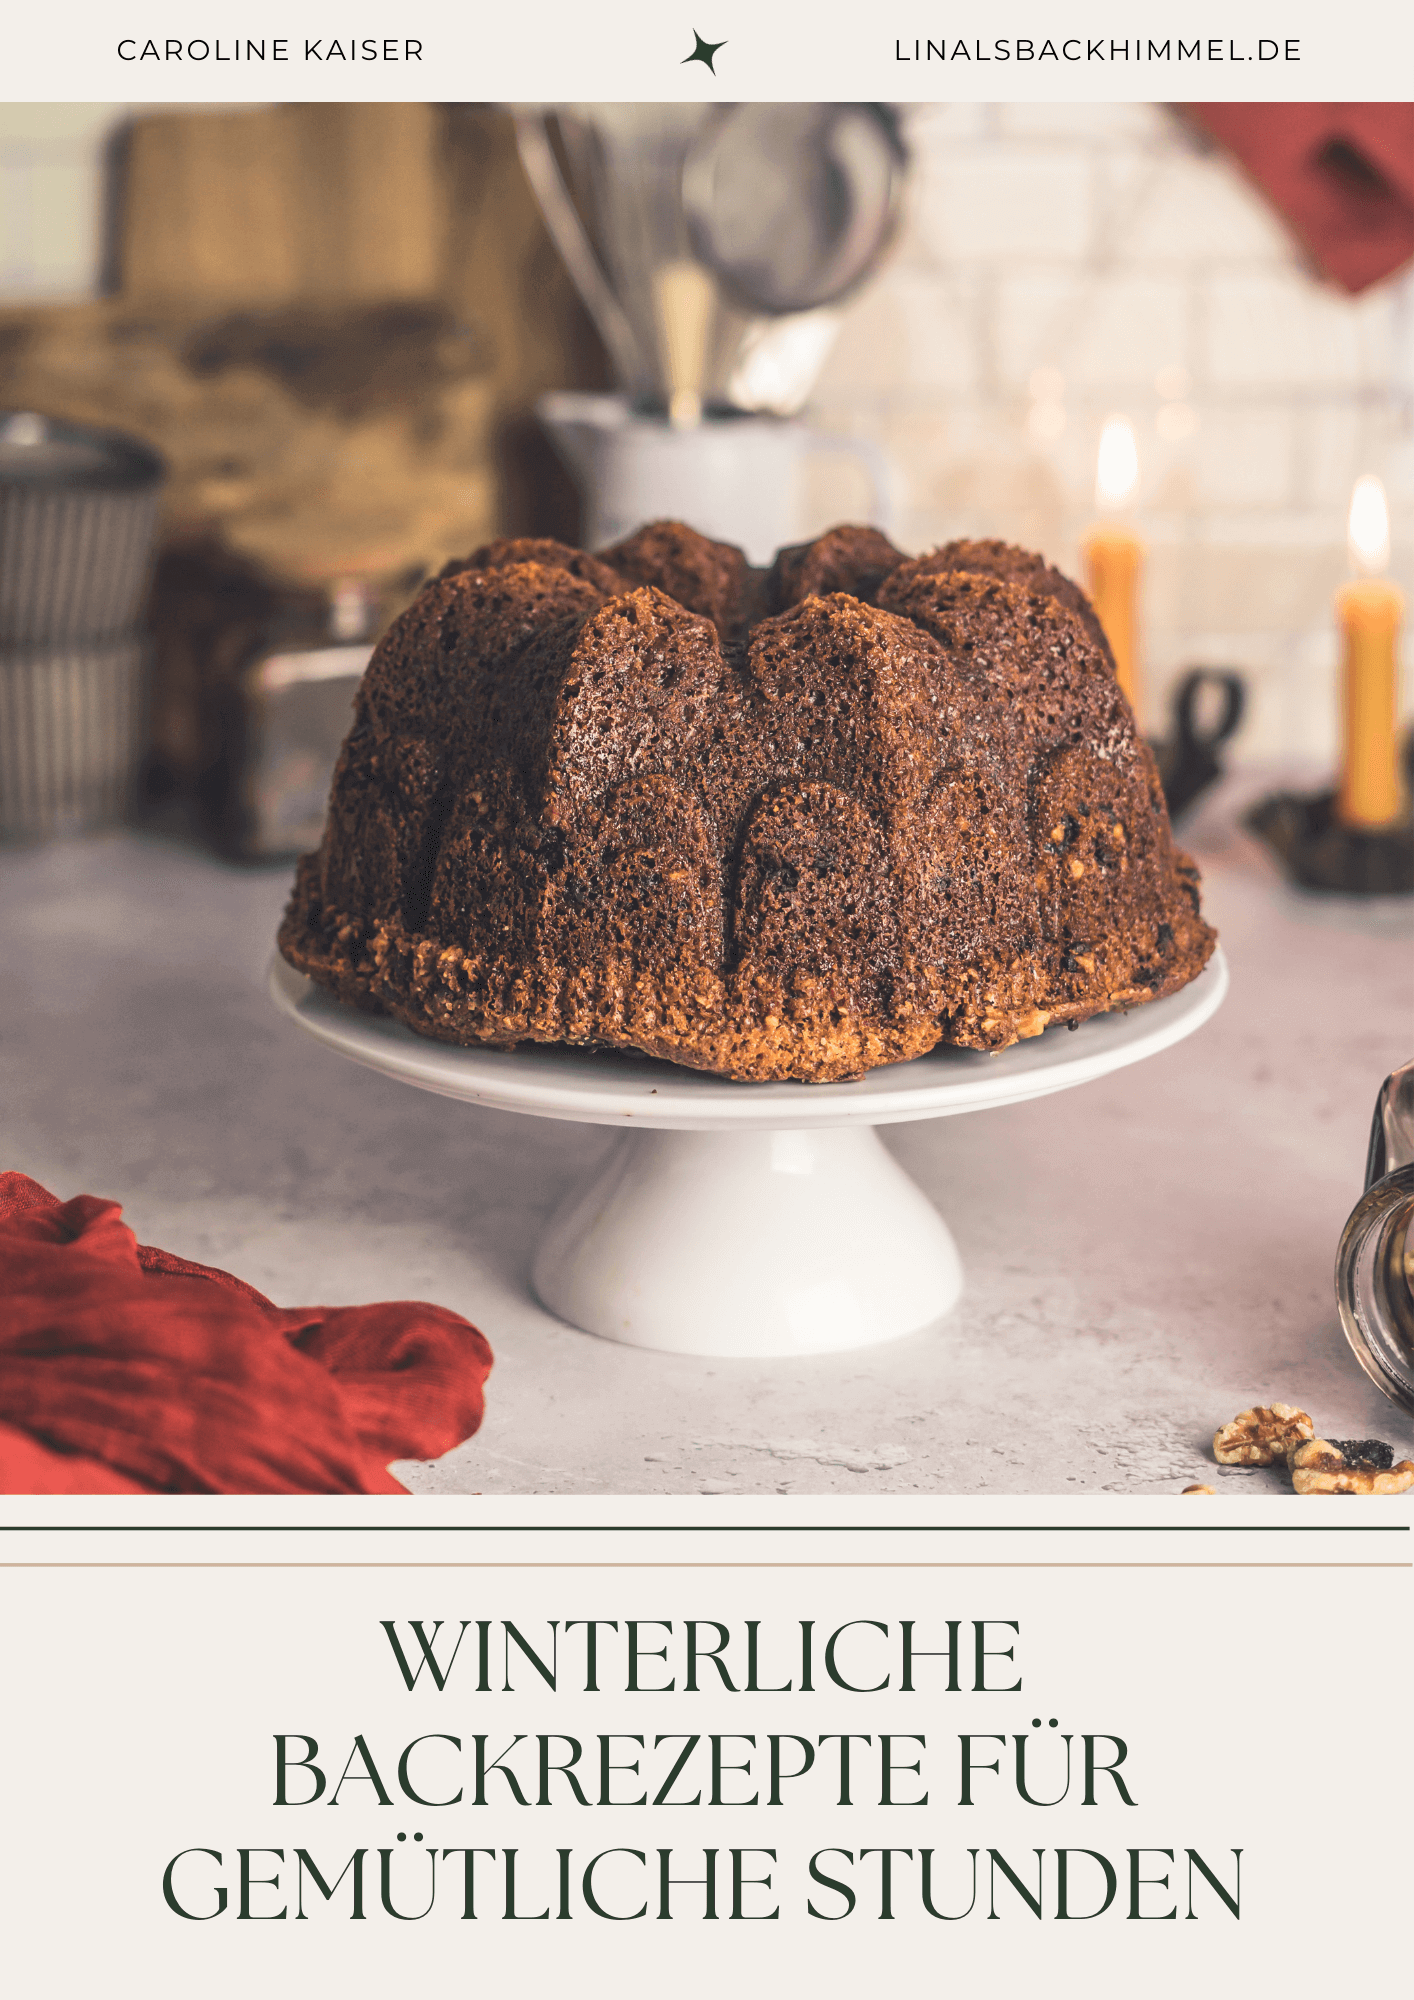 Winterliche Backrezepte für gemütliche Stunden - Ebook Cover